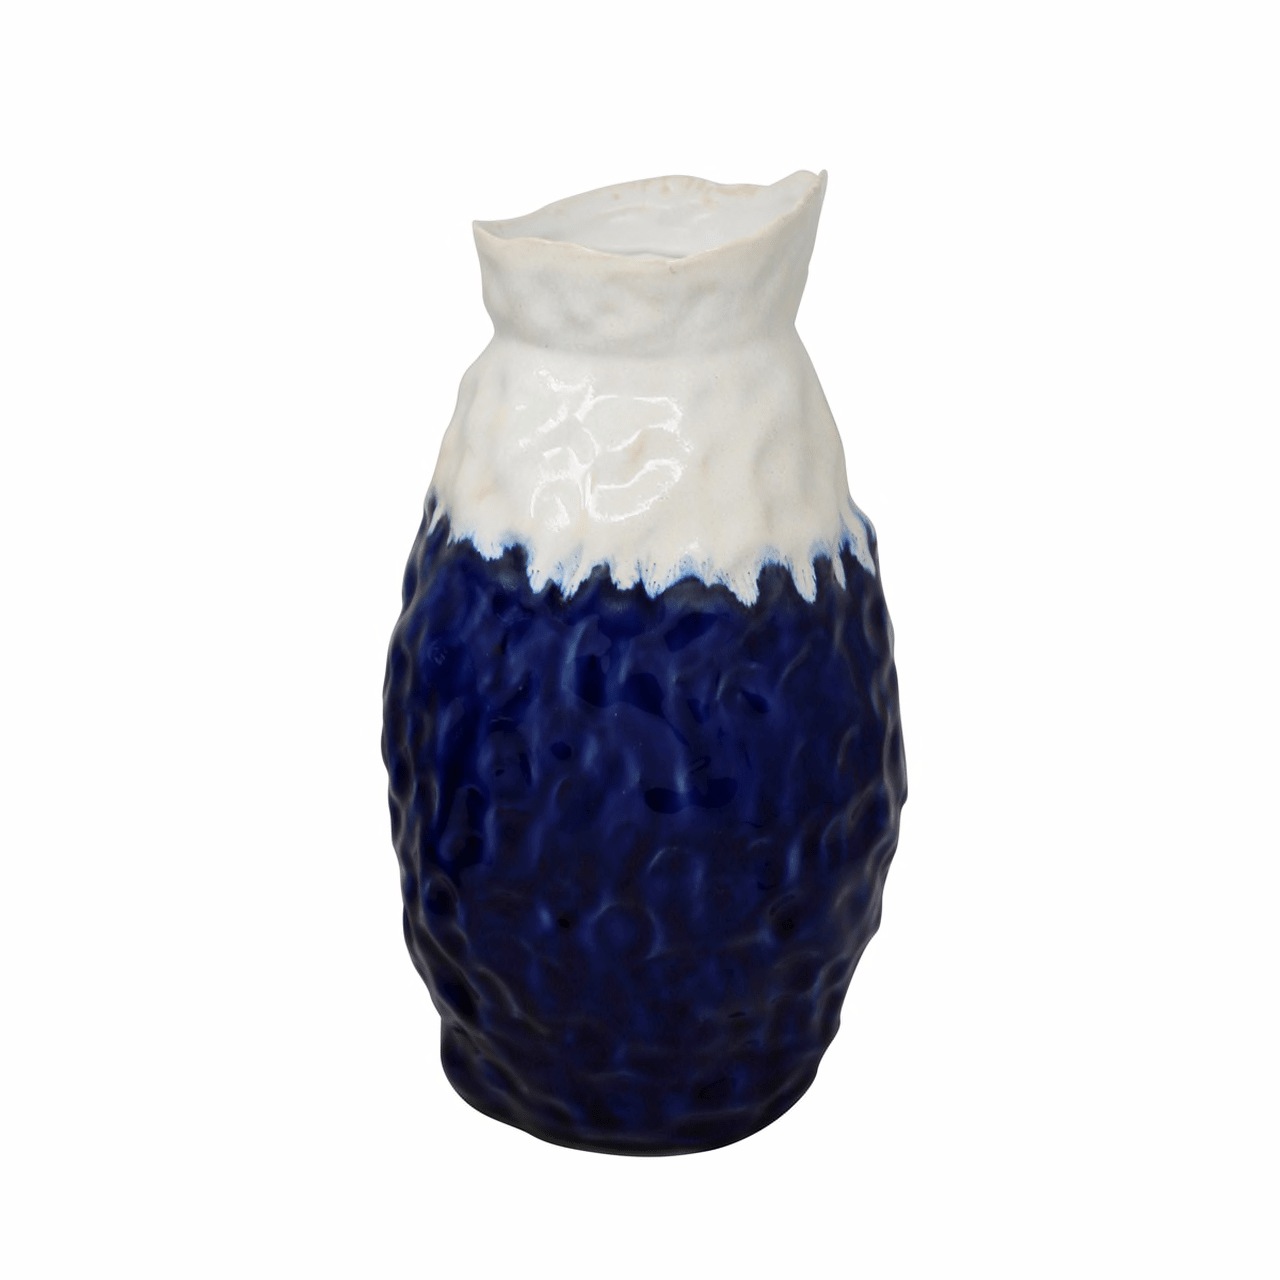 Ceramic Vase 13" H, White/Blue